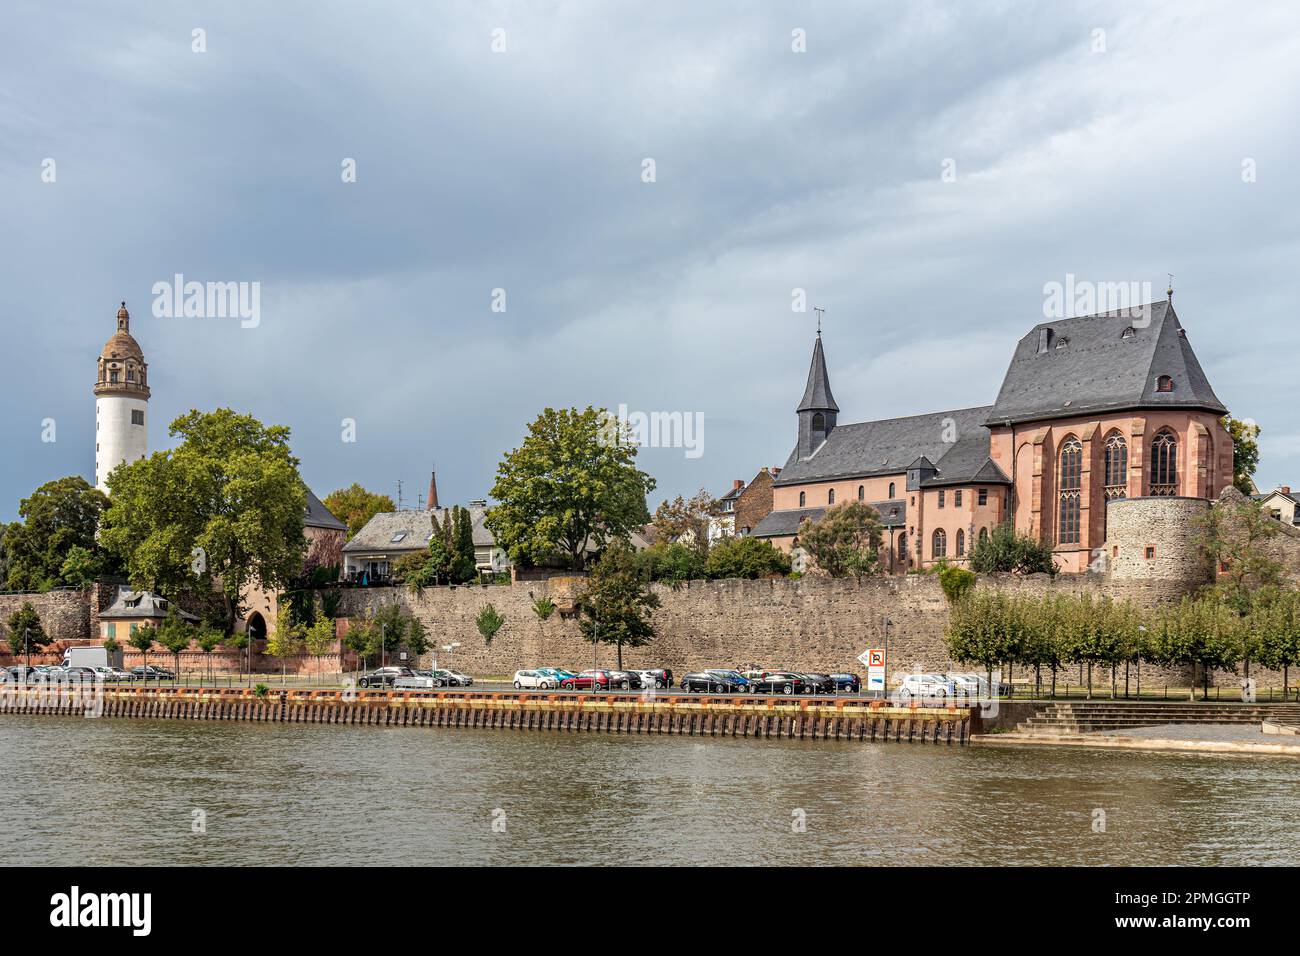 Frankfurt-Höchst am Main mit Blick auf die alte Höchsterburg und die Carolingian Saint Justin's Kirche, das älteste Gebäude in Frankfurt am Main Stockfoto